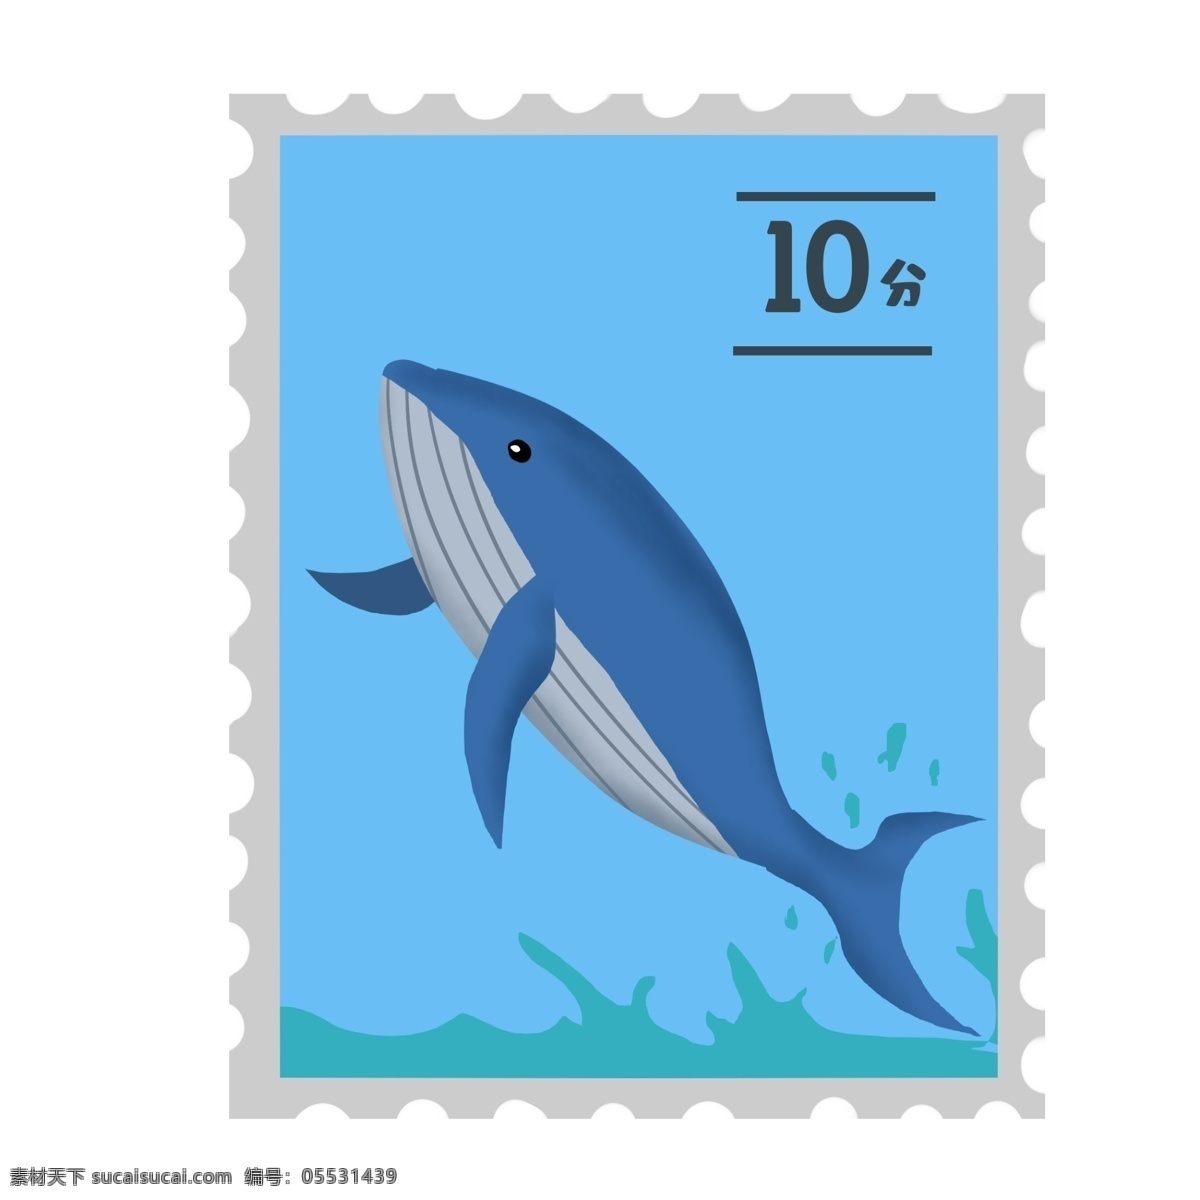 蓝色鲸鱼邮票 鲸鱼 集邮 邮戳